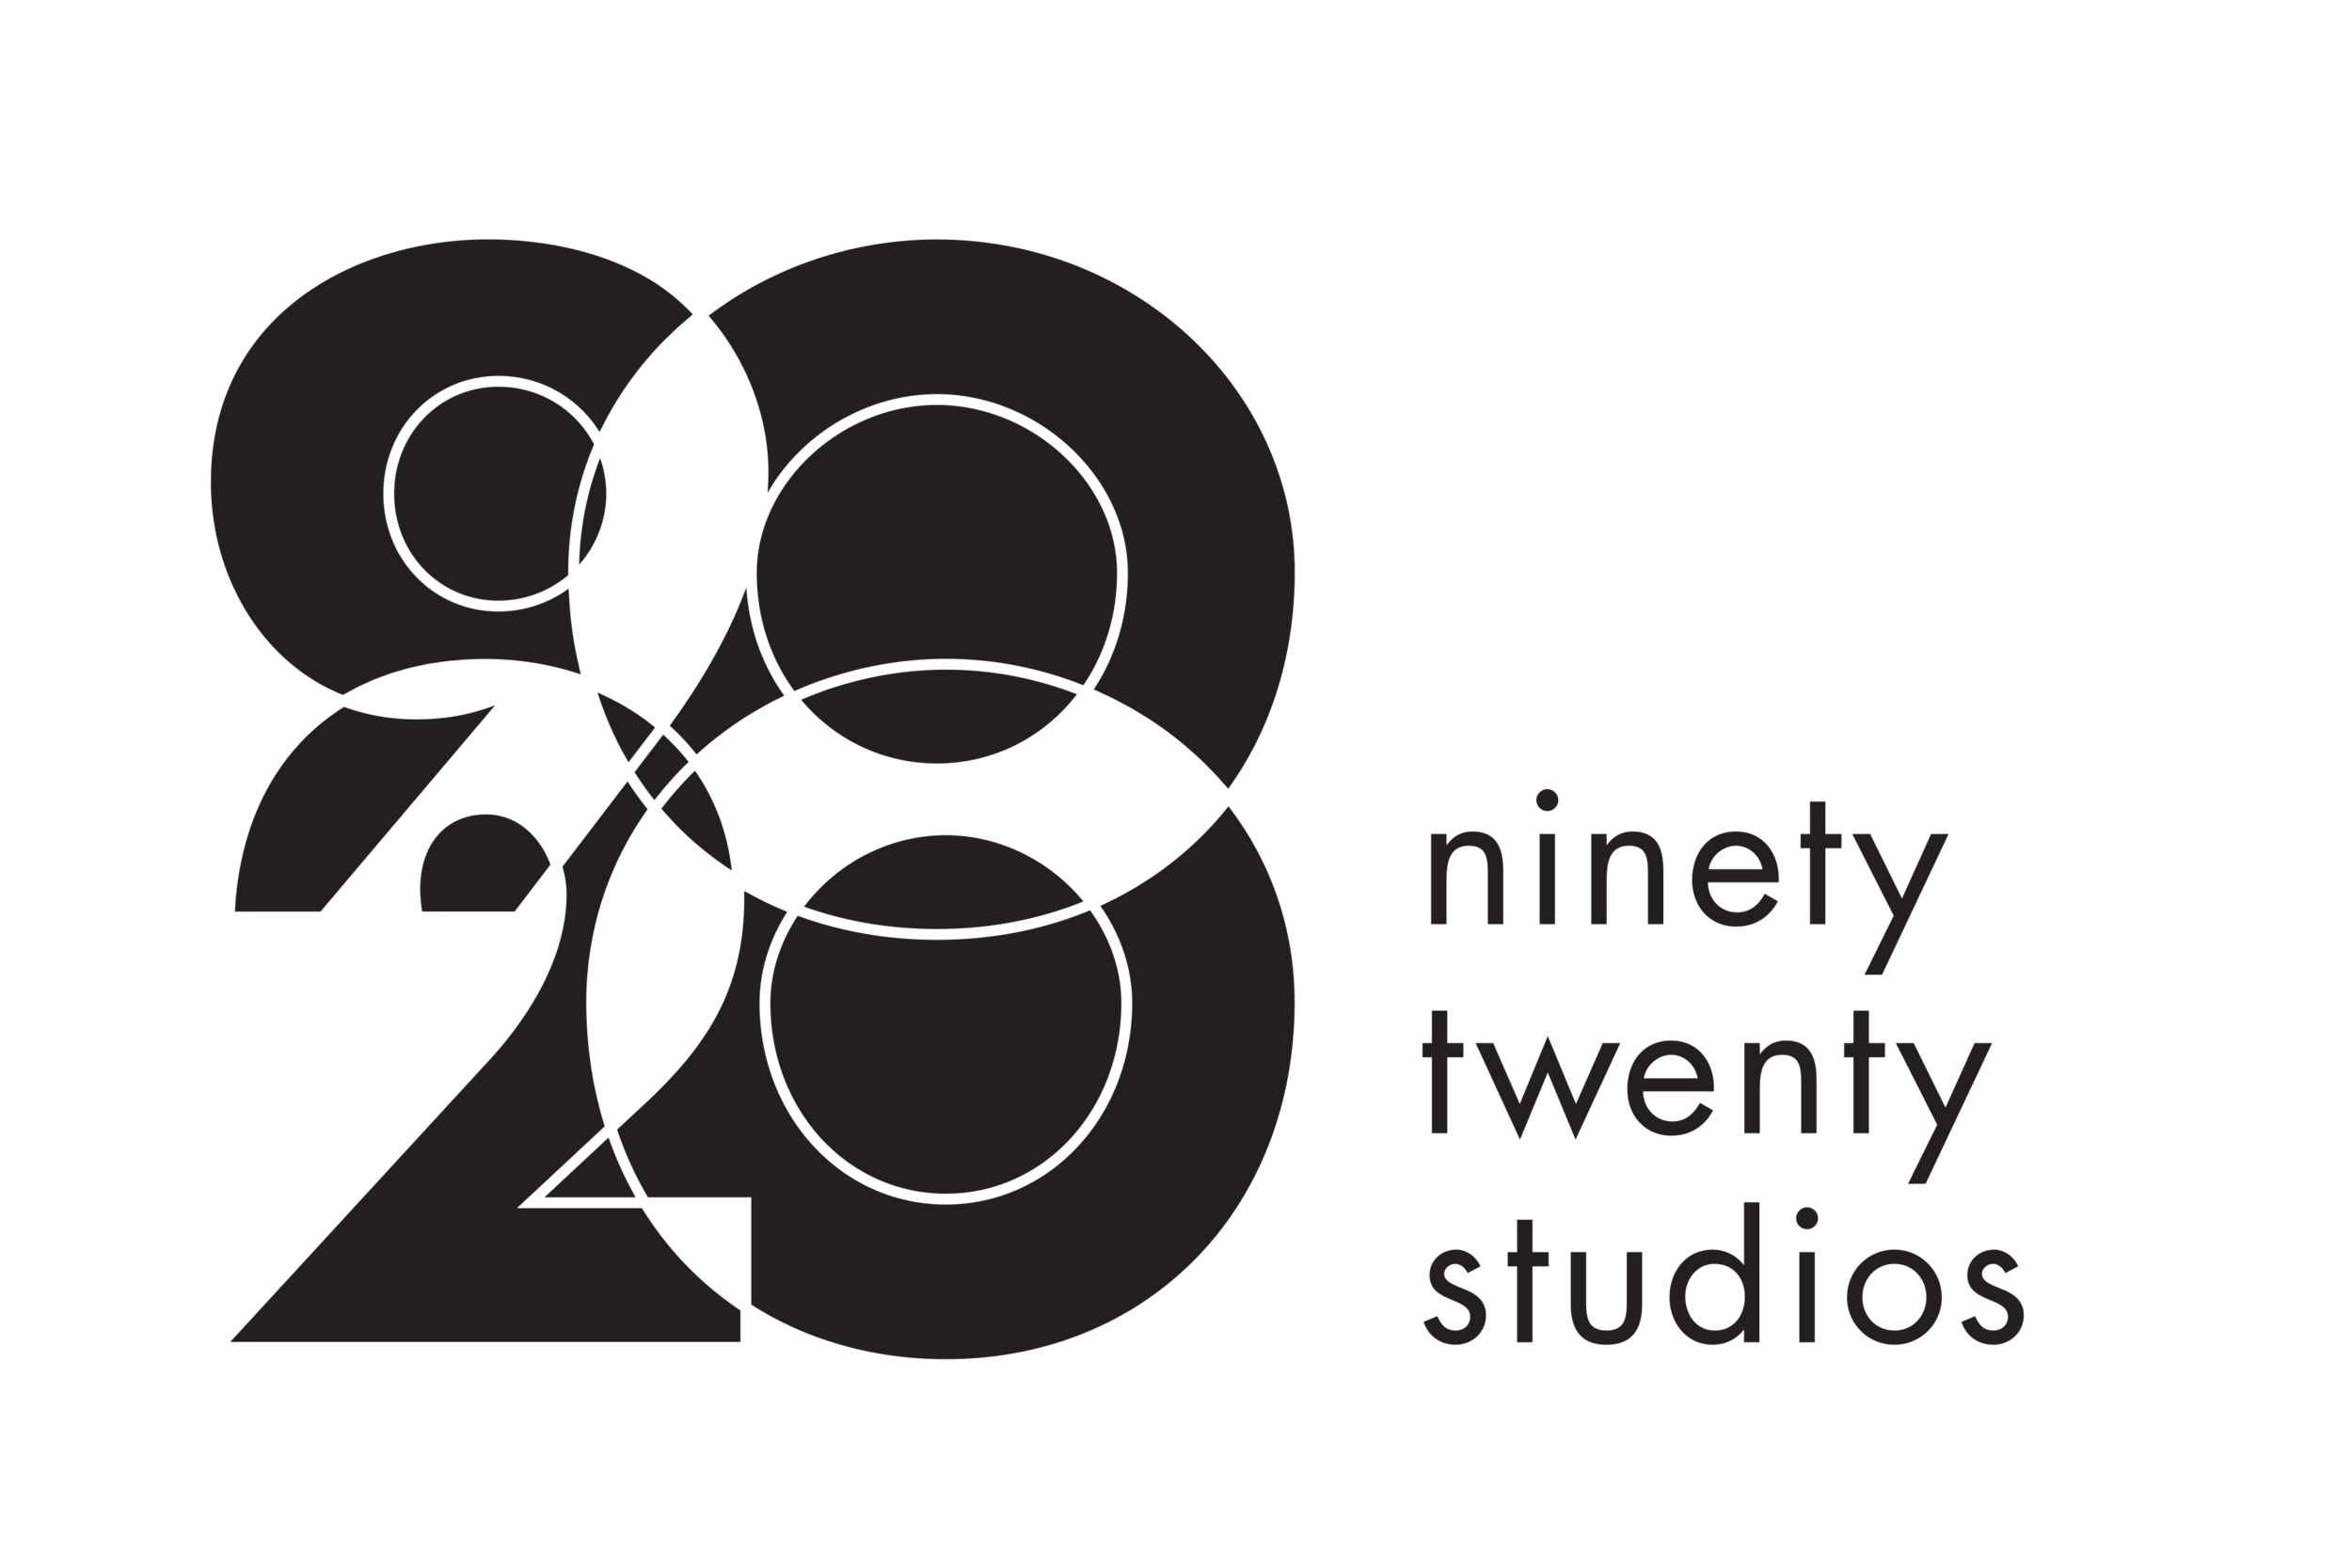 Ninety-Twenty Studios